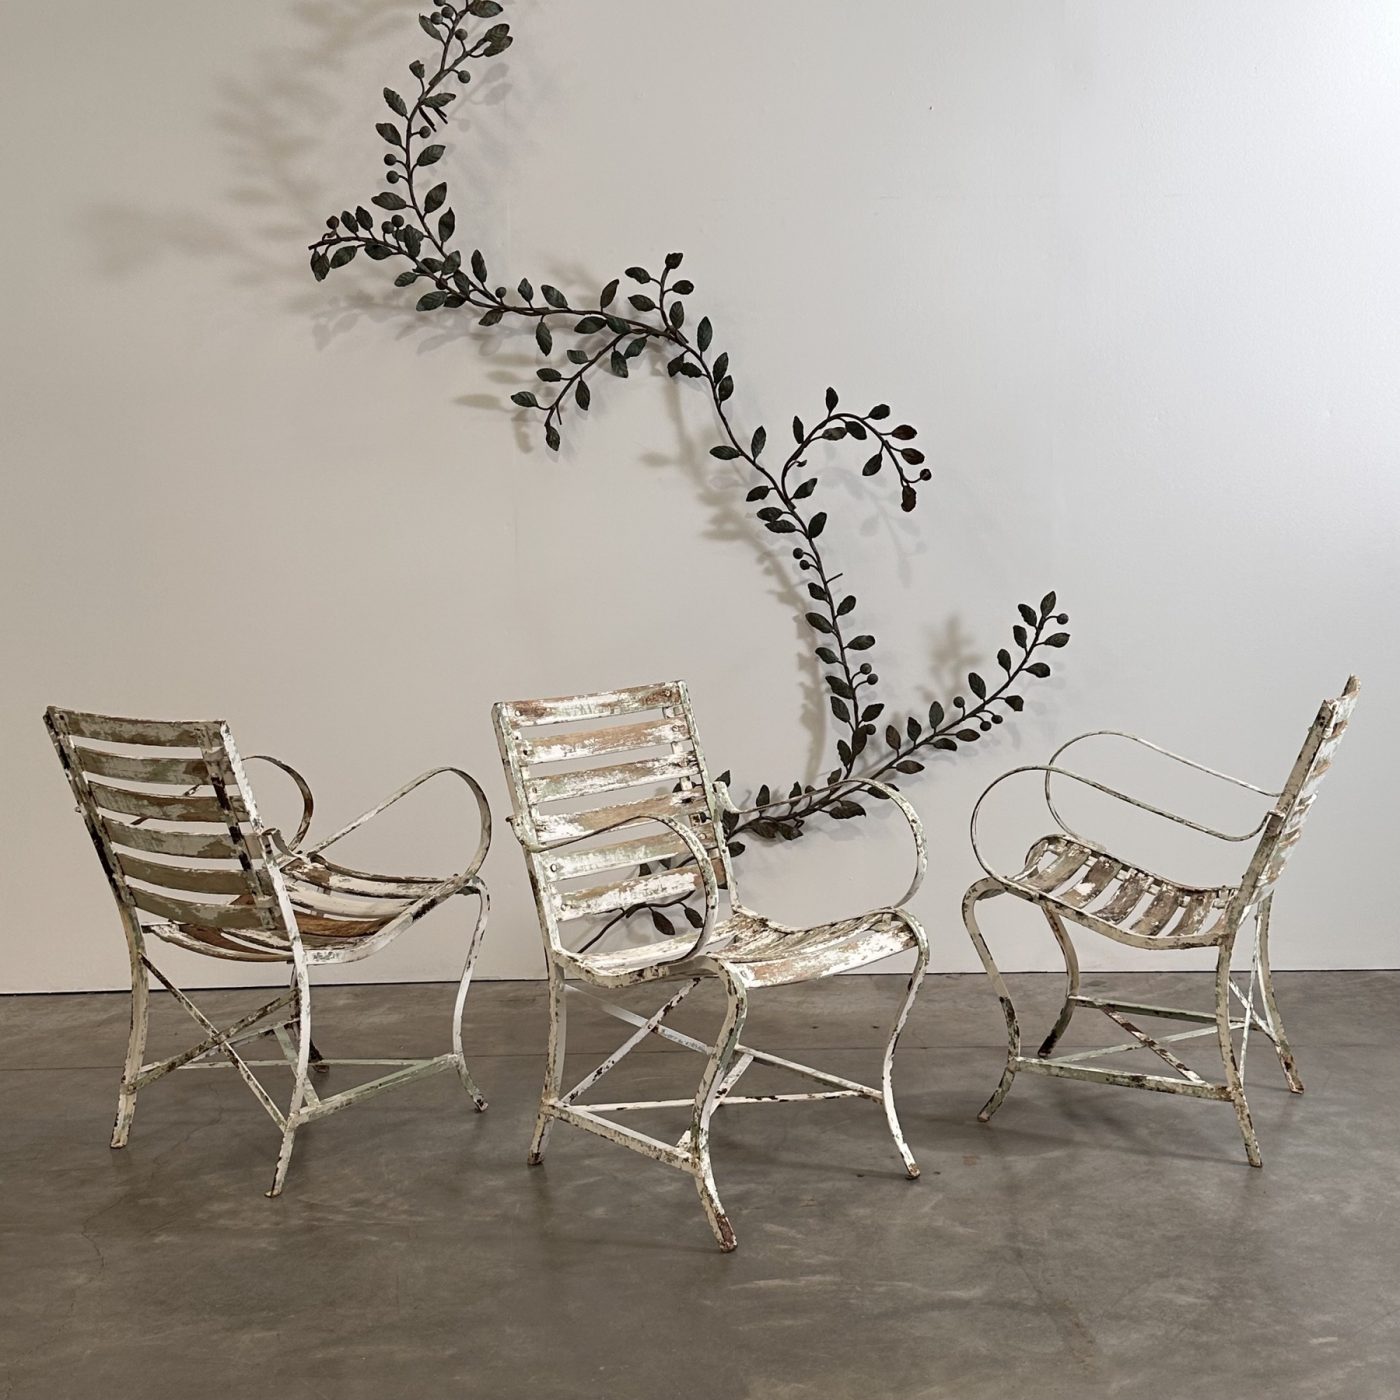 objet-vagabond-garden-chairs0003